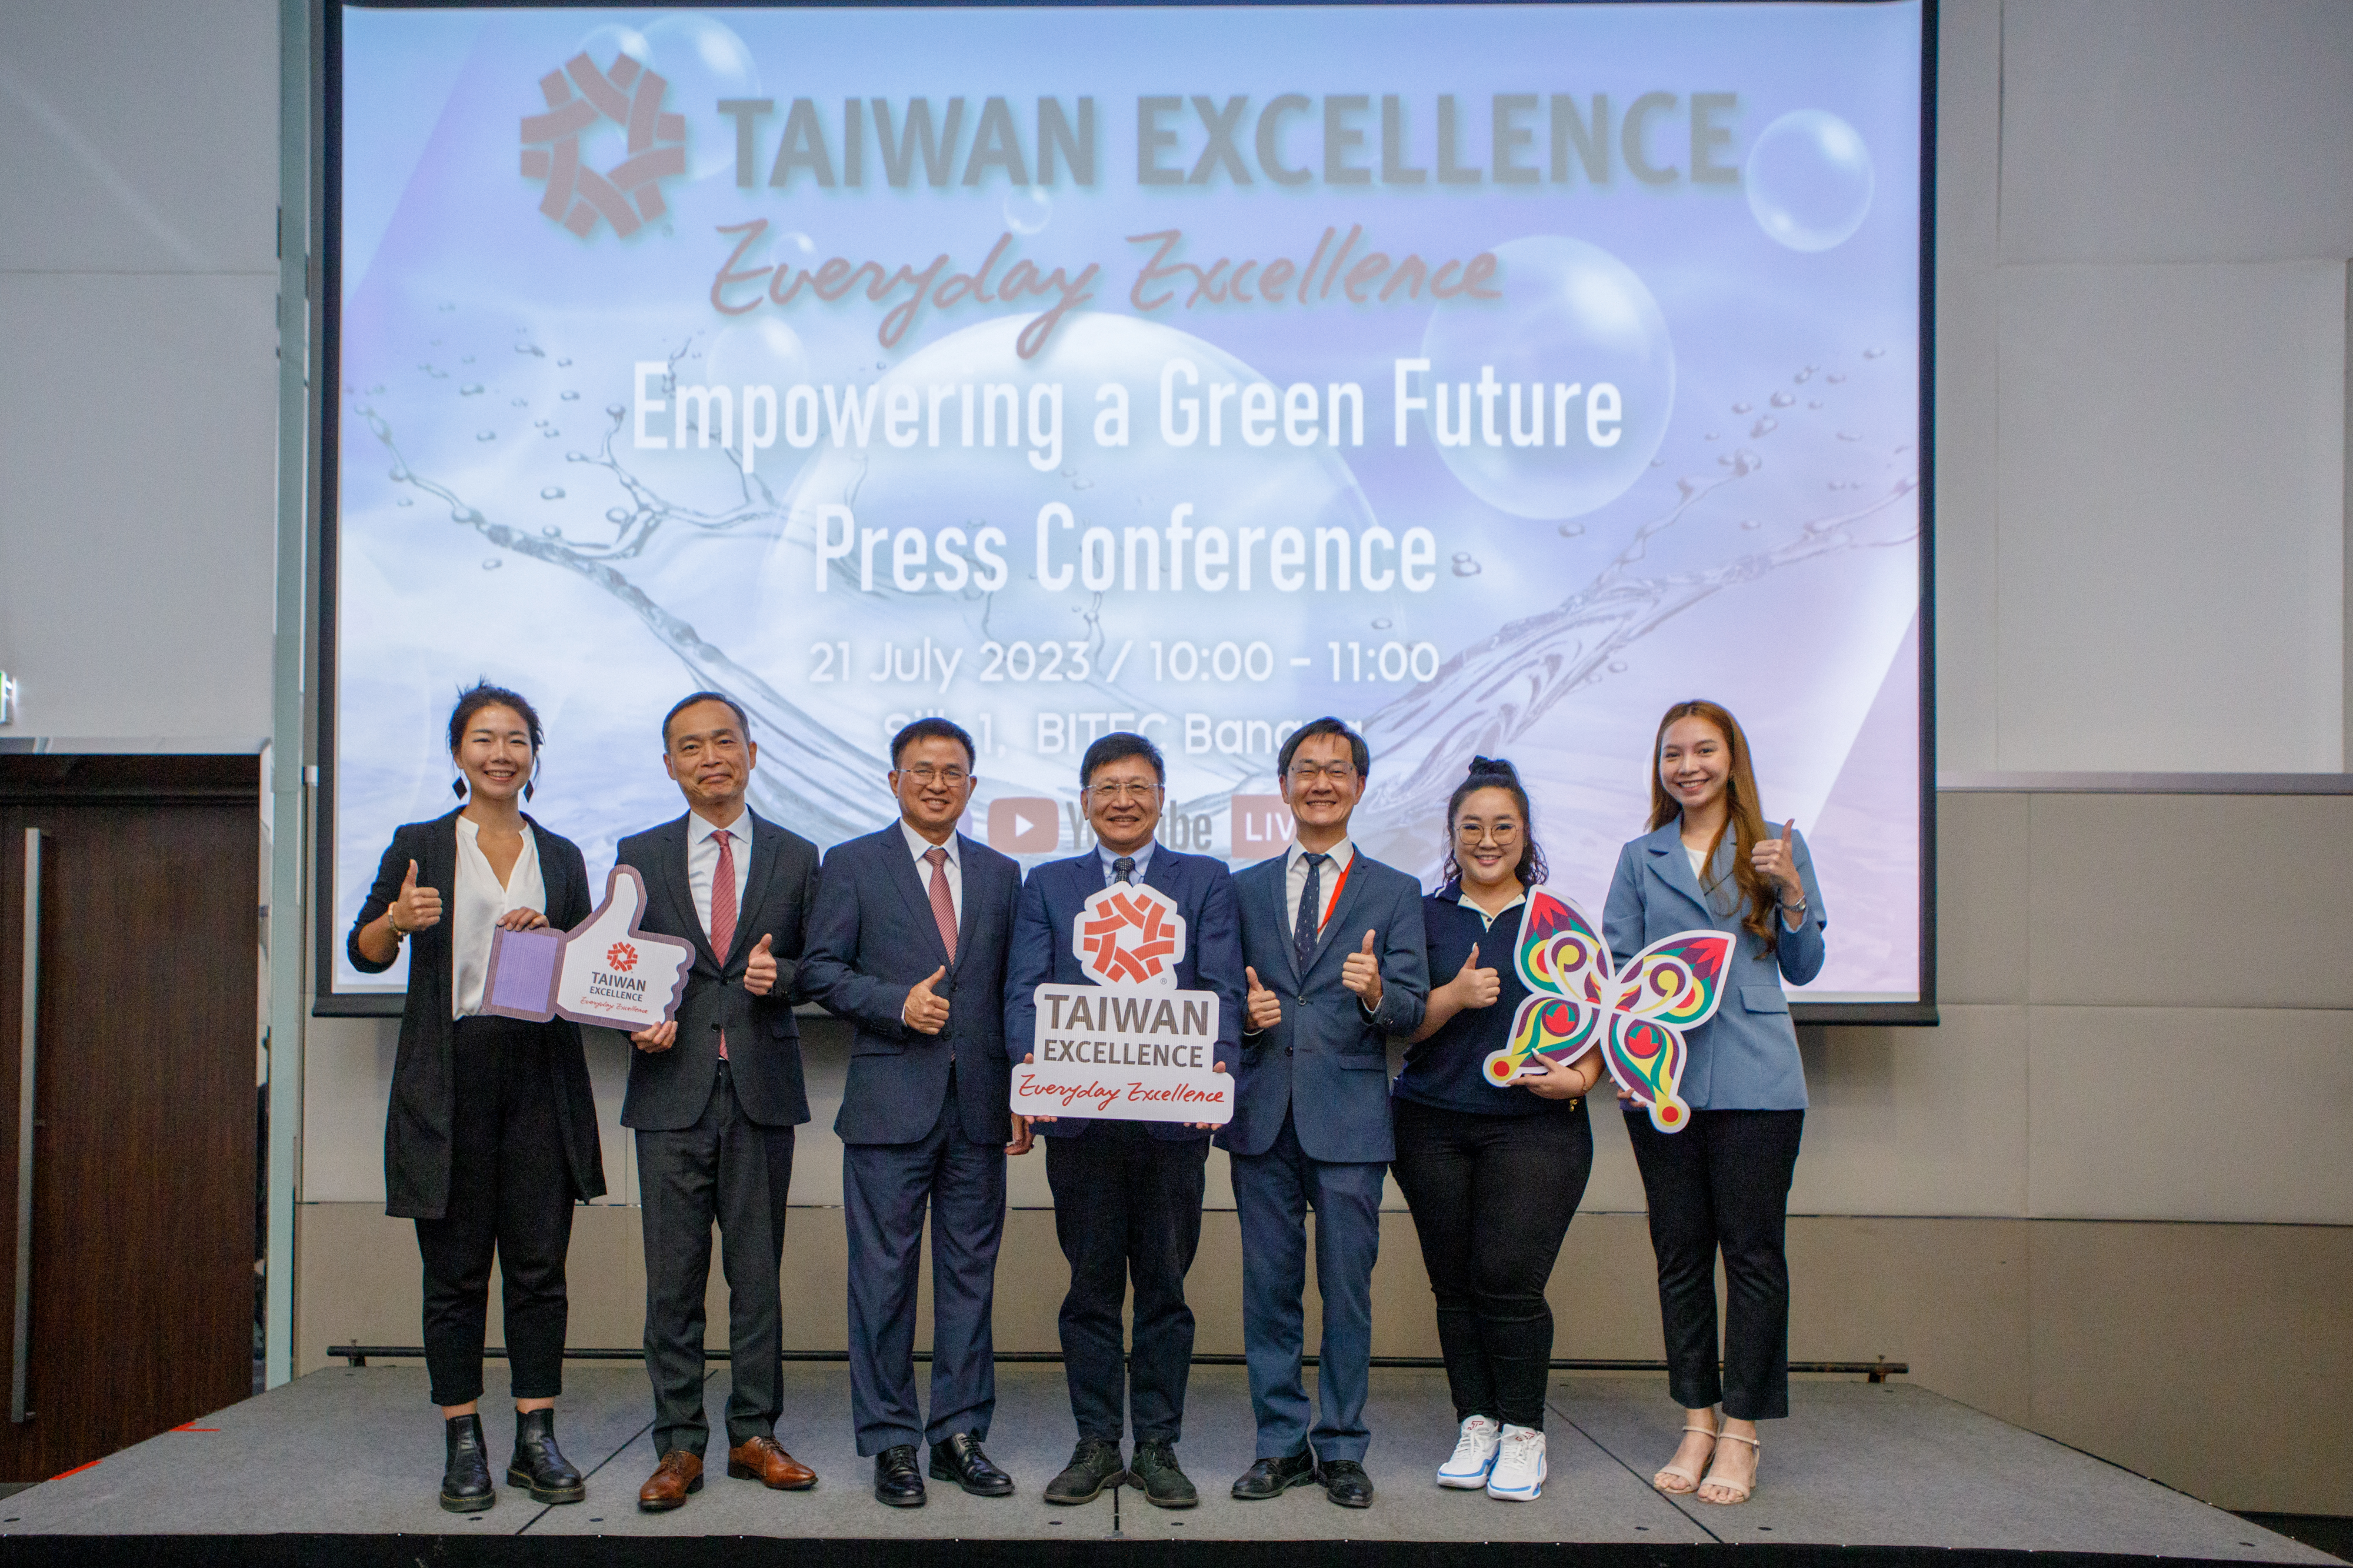 บริษัทชั้นนำจากไต้หวันเปิดตัวนวัตกรรมและเทคโนโลยีใหม่ล่าสุดในงานแถลงข่าว 'Taiwan Excellence “Empowering a Green Future'